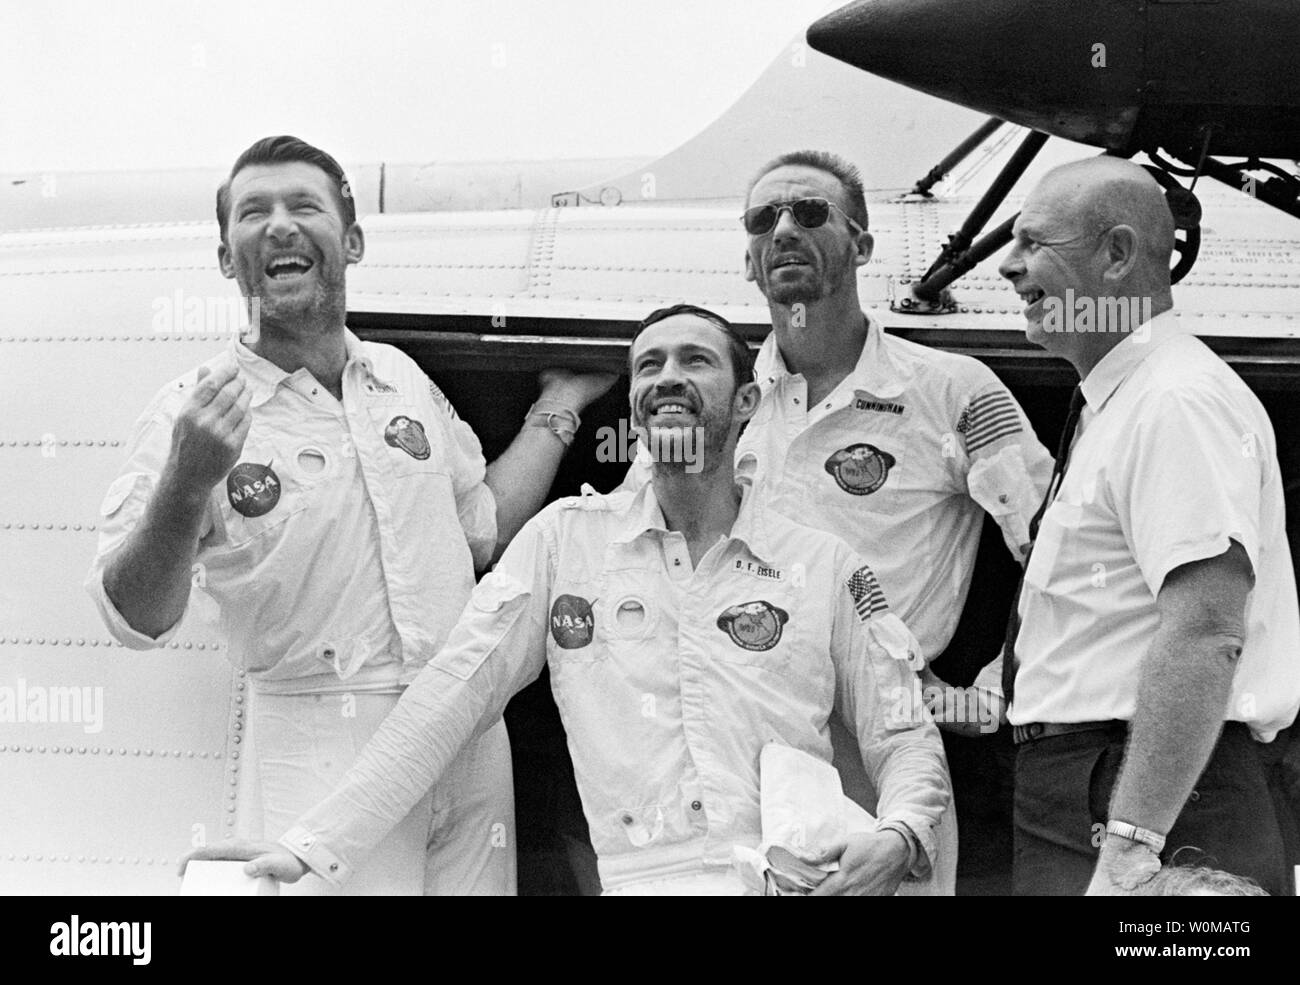 Astronauta Wally Schirra, uno l'originale Mercury sette astronauti, morì all età di 84 a San Diego il 2 maggio 2007. Schirra era l'unico astronauta a volare in mercurio, Gemini e Apollo programmi spaziali. Egli è mostrata a sinistra come l' Apollo 7 equipaggio arriva a bordo della USS Essex dopo gli schizzi giù nell'Oceano Atlantico (L-R): Schirra, Donn Eisele, Walter Cunningham e il dottor Donald E. Stulken, il ripristino di team leader. (UPI foto/NASA/file) Foto Stock